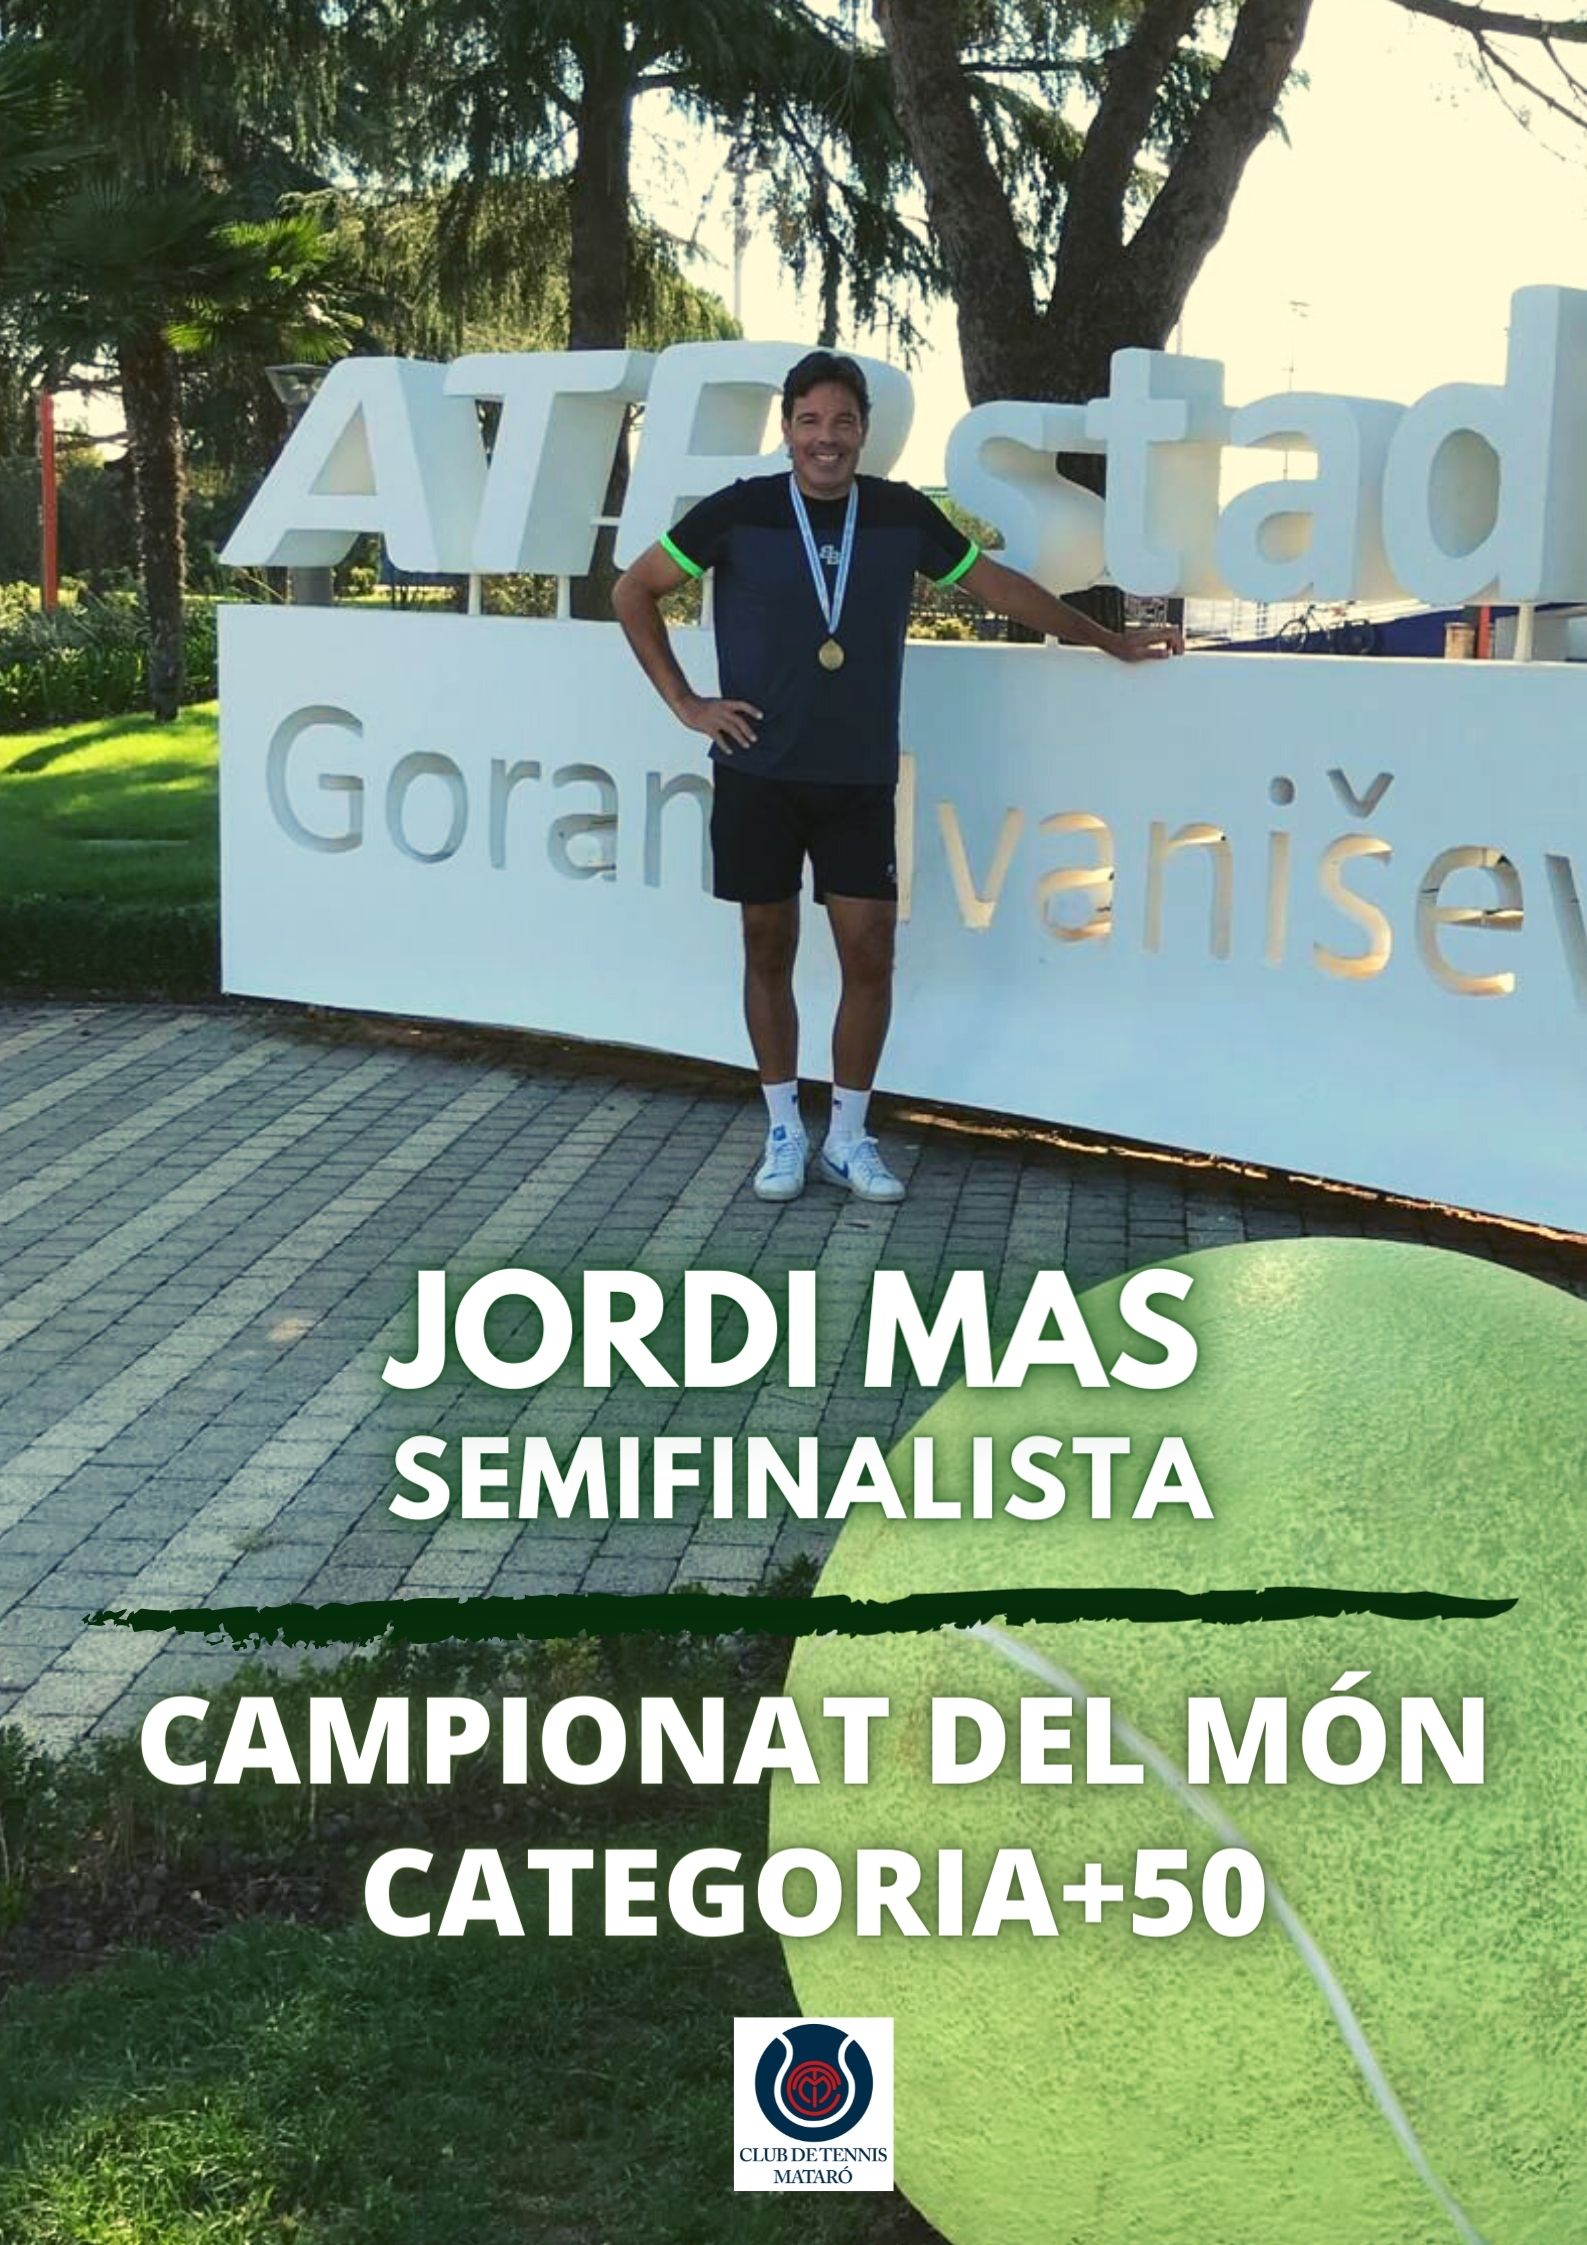 JORDI MAS SEMIFINALISTA CAMPIONAT DEL MÓN +50